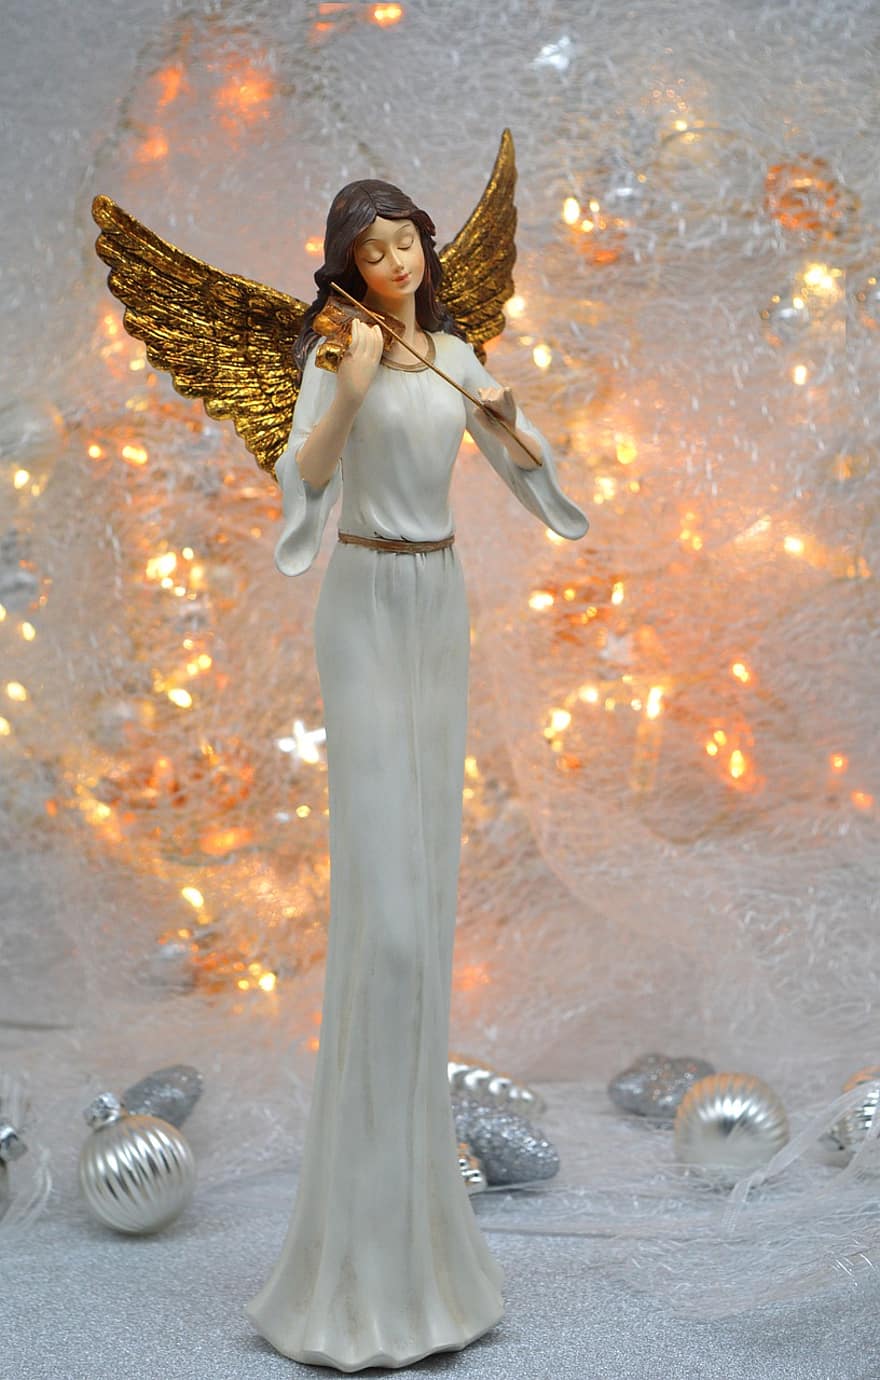 świąteczny anioł, Boże Narodzenie, światła, świąteczne dekoracje, skrzypce, złote skrzydła, czas świąt, anioł, motyw świąteczny